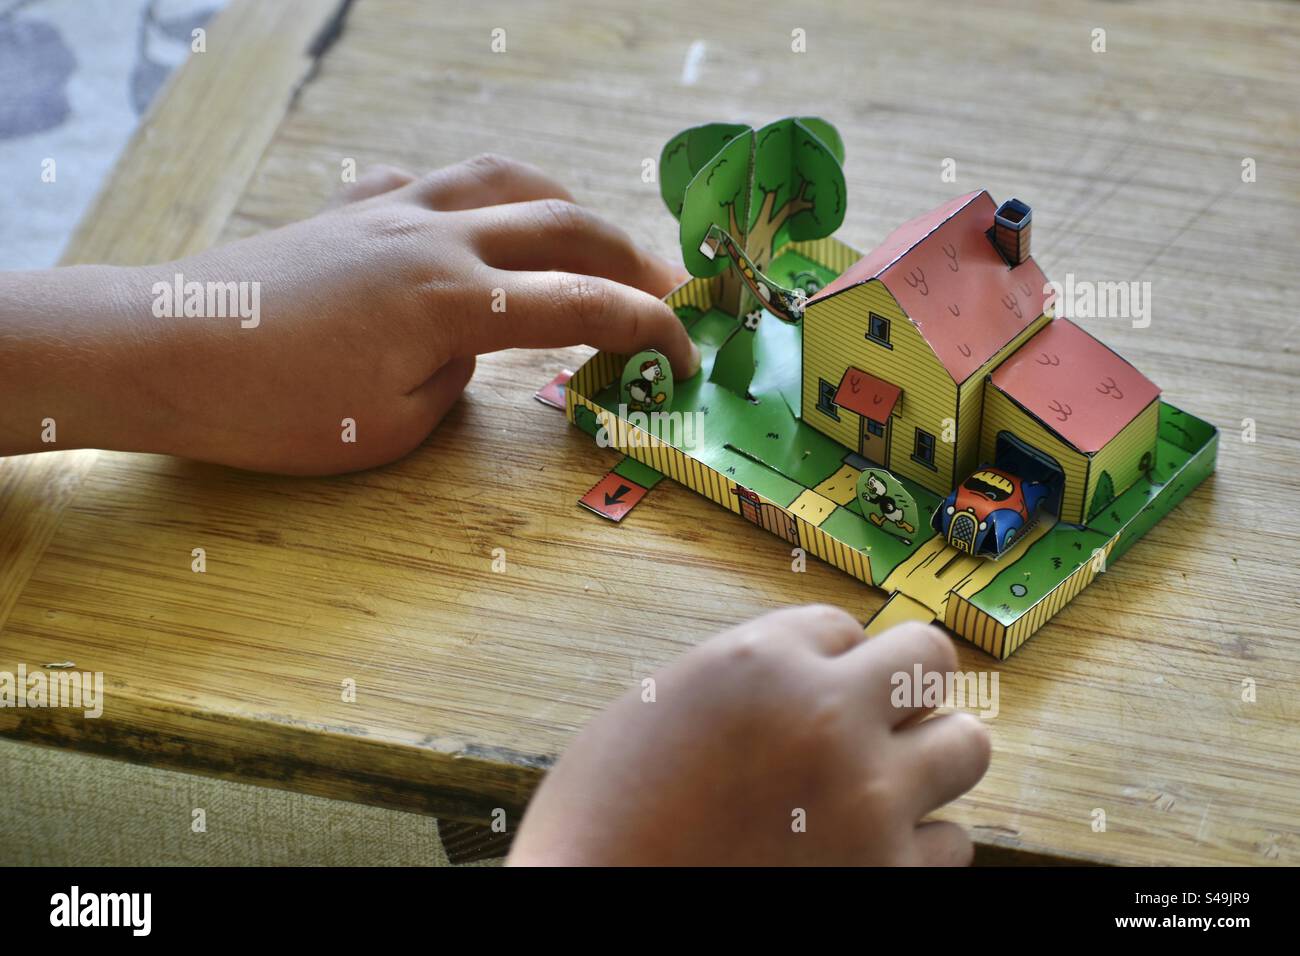 Le mani di una bambina giocano con un giocattolo ritagliato di carta o di cartone. Una casa animata con cortile o giardino. Foto Stock